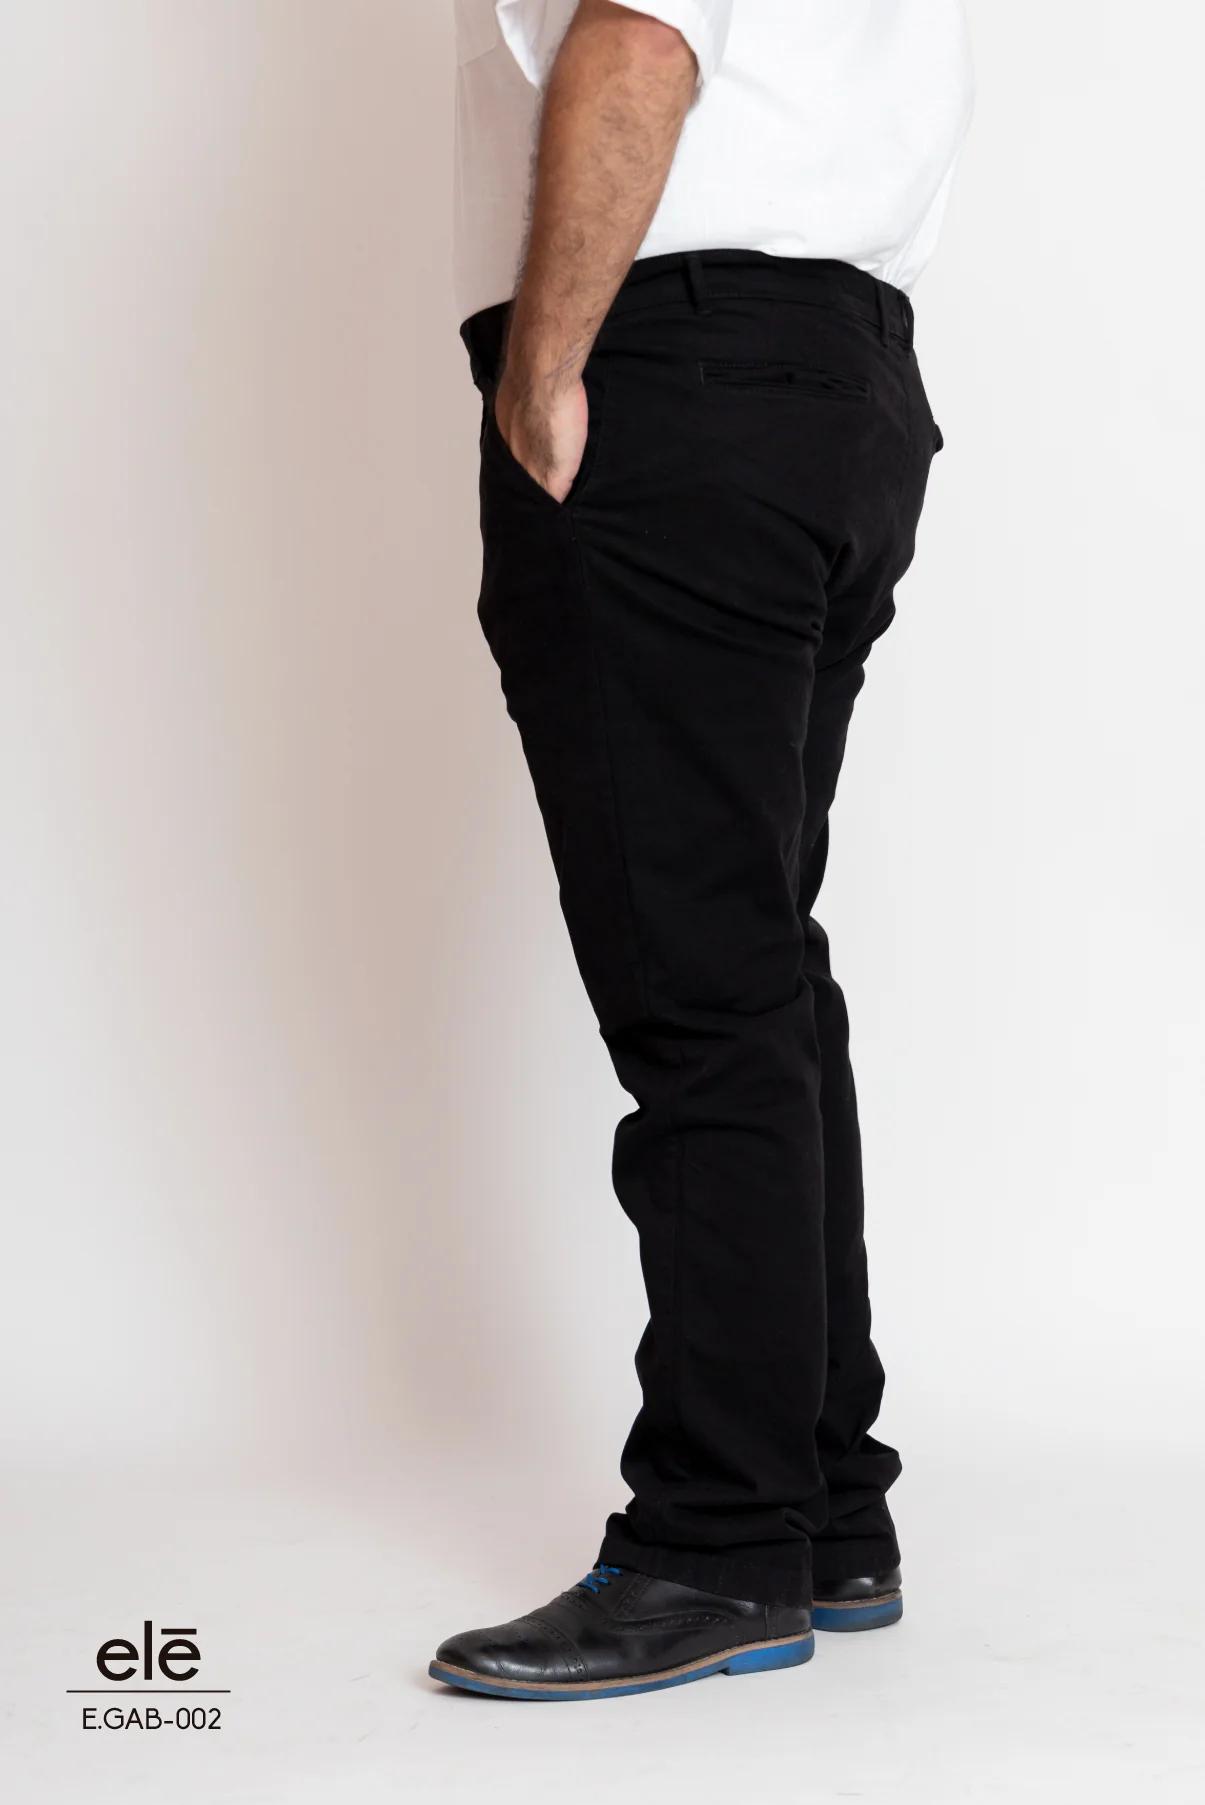 pantalon de gabardina negro - Cómo se lavan los pantalones de gabardina